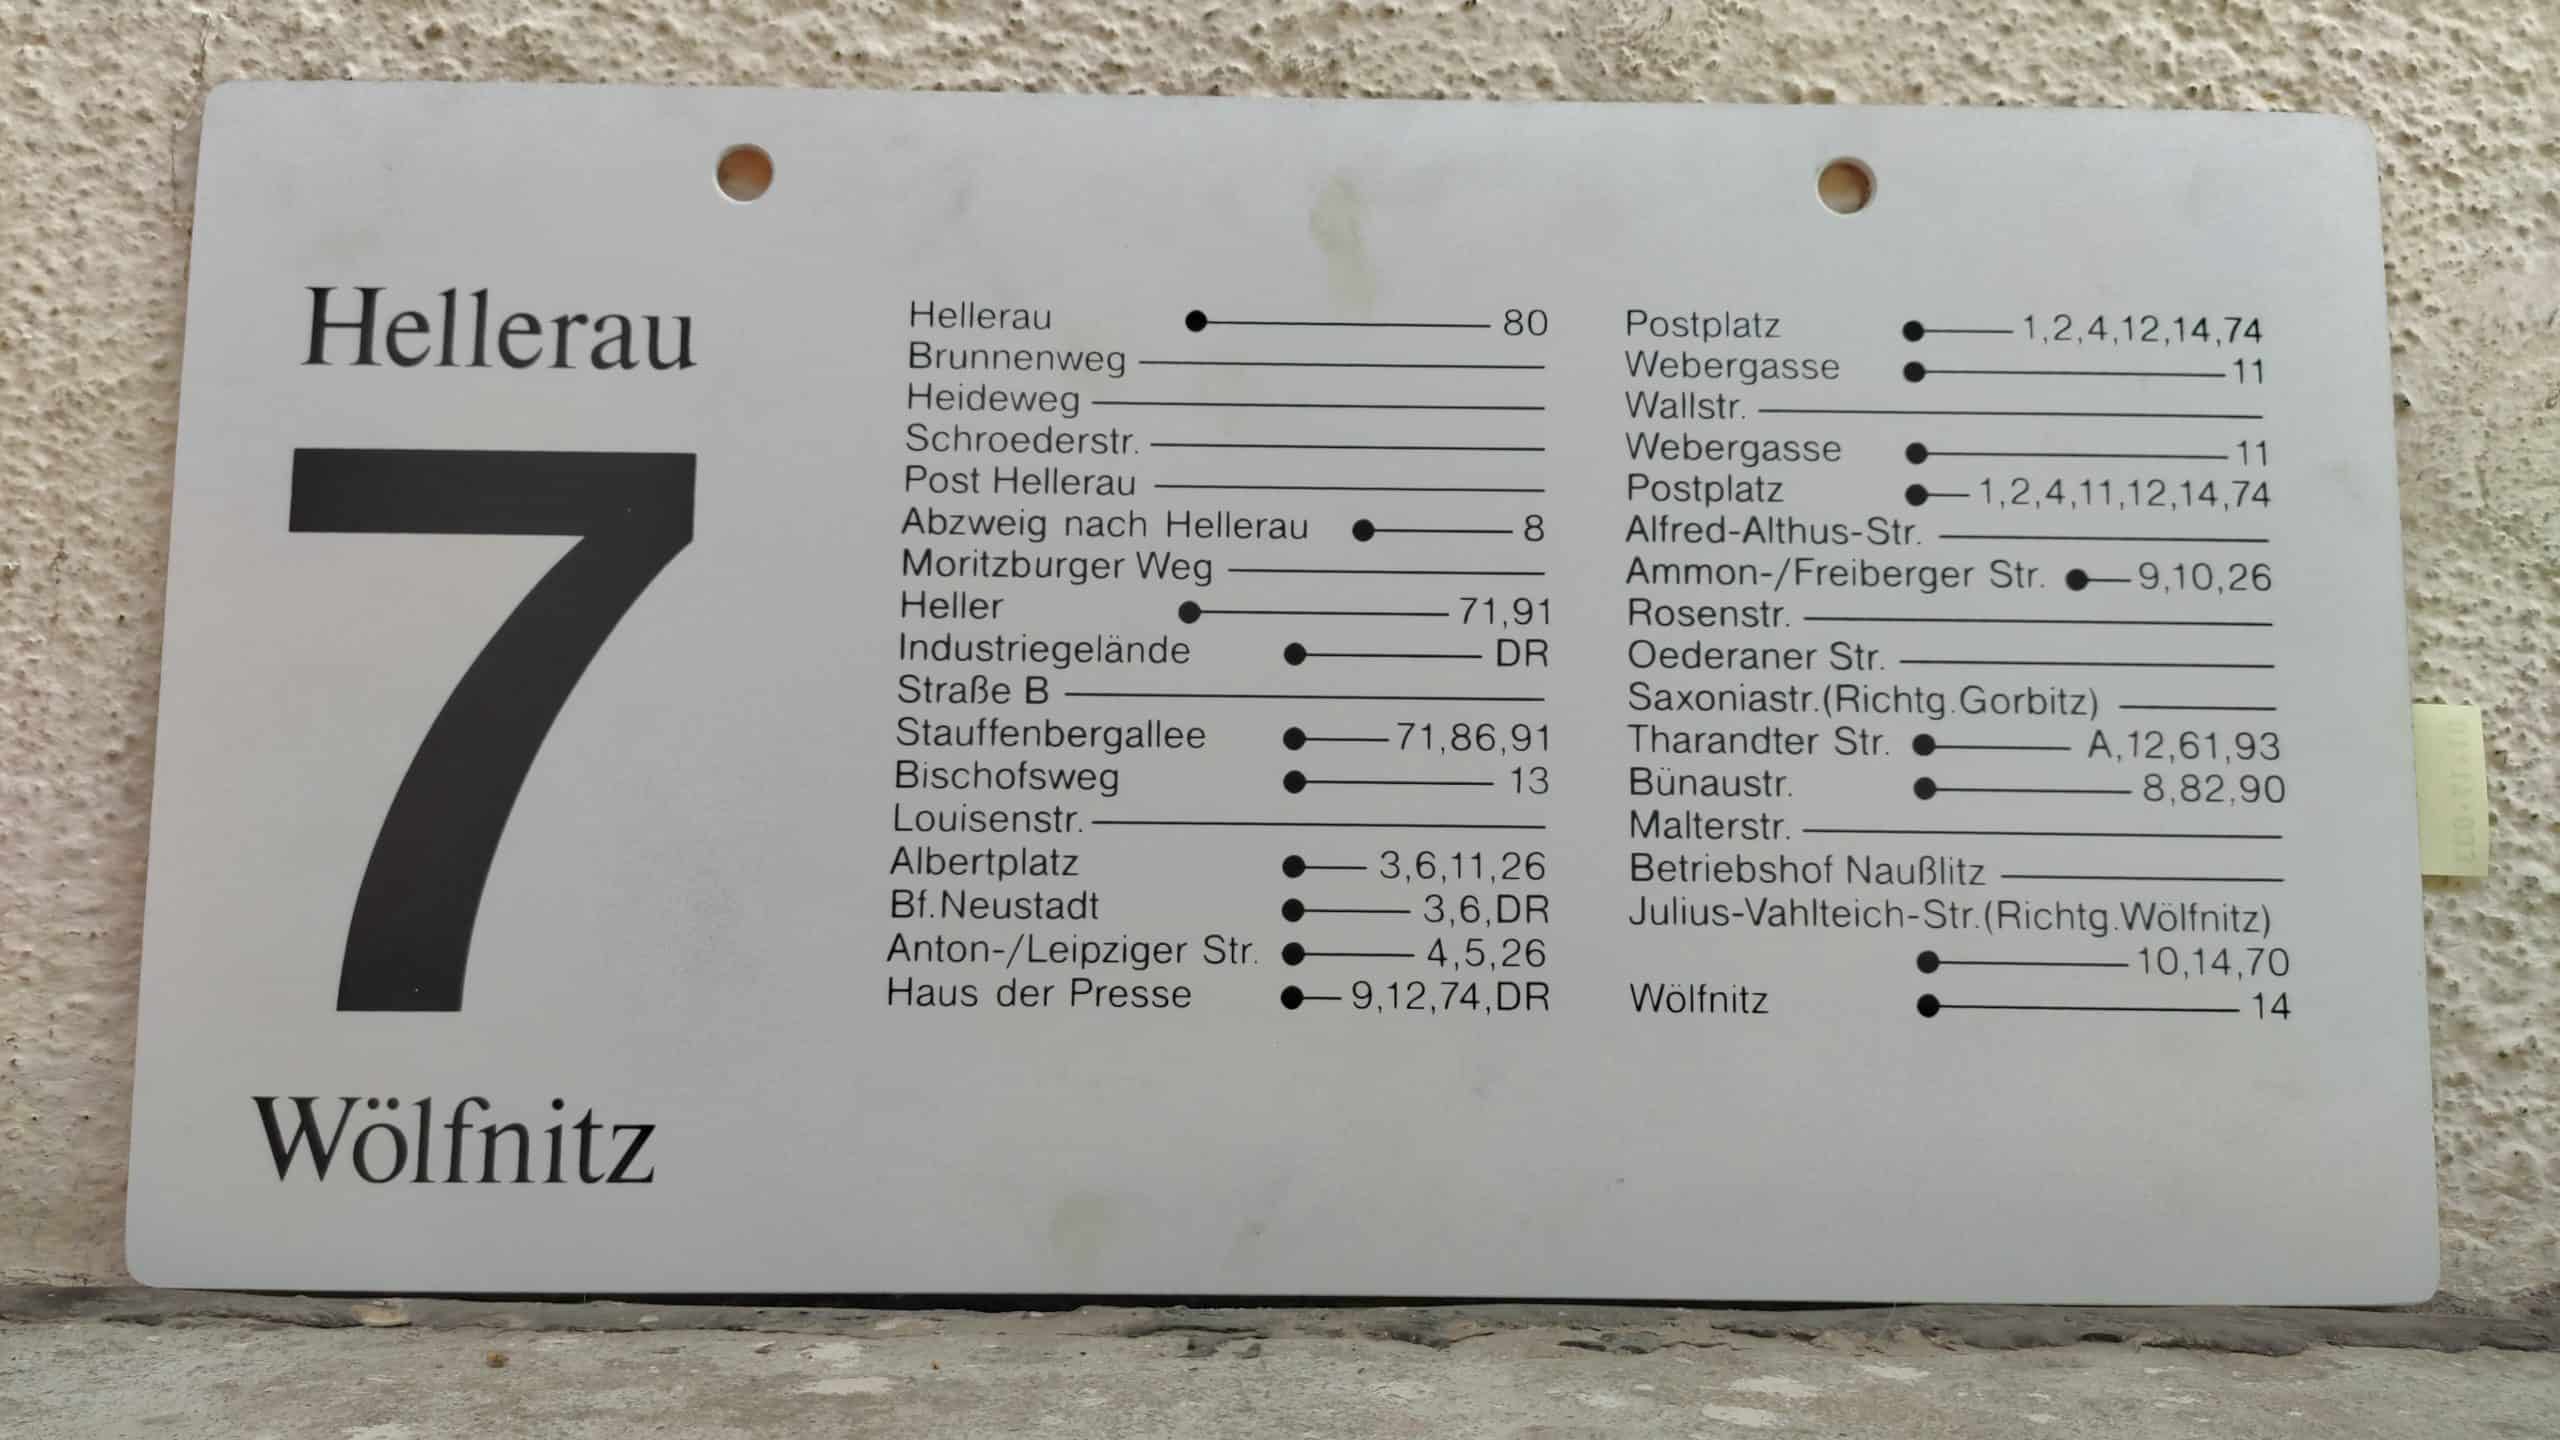 7 Hellerau – Wölfnitz #2